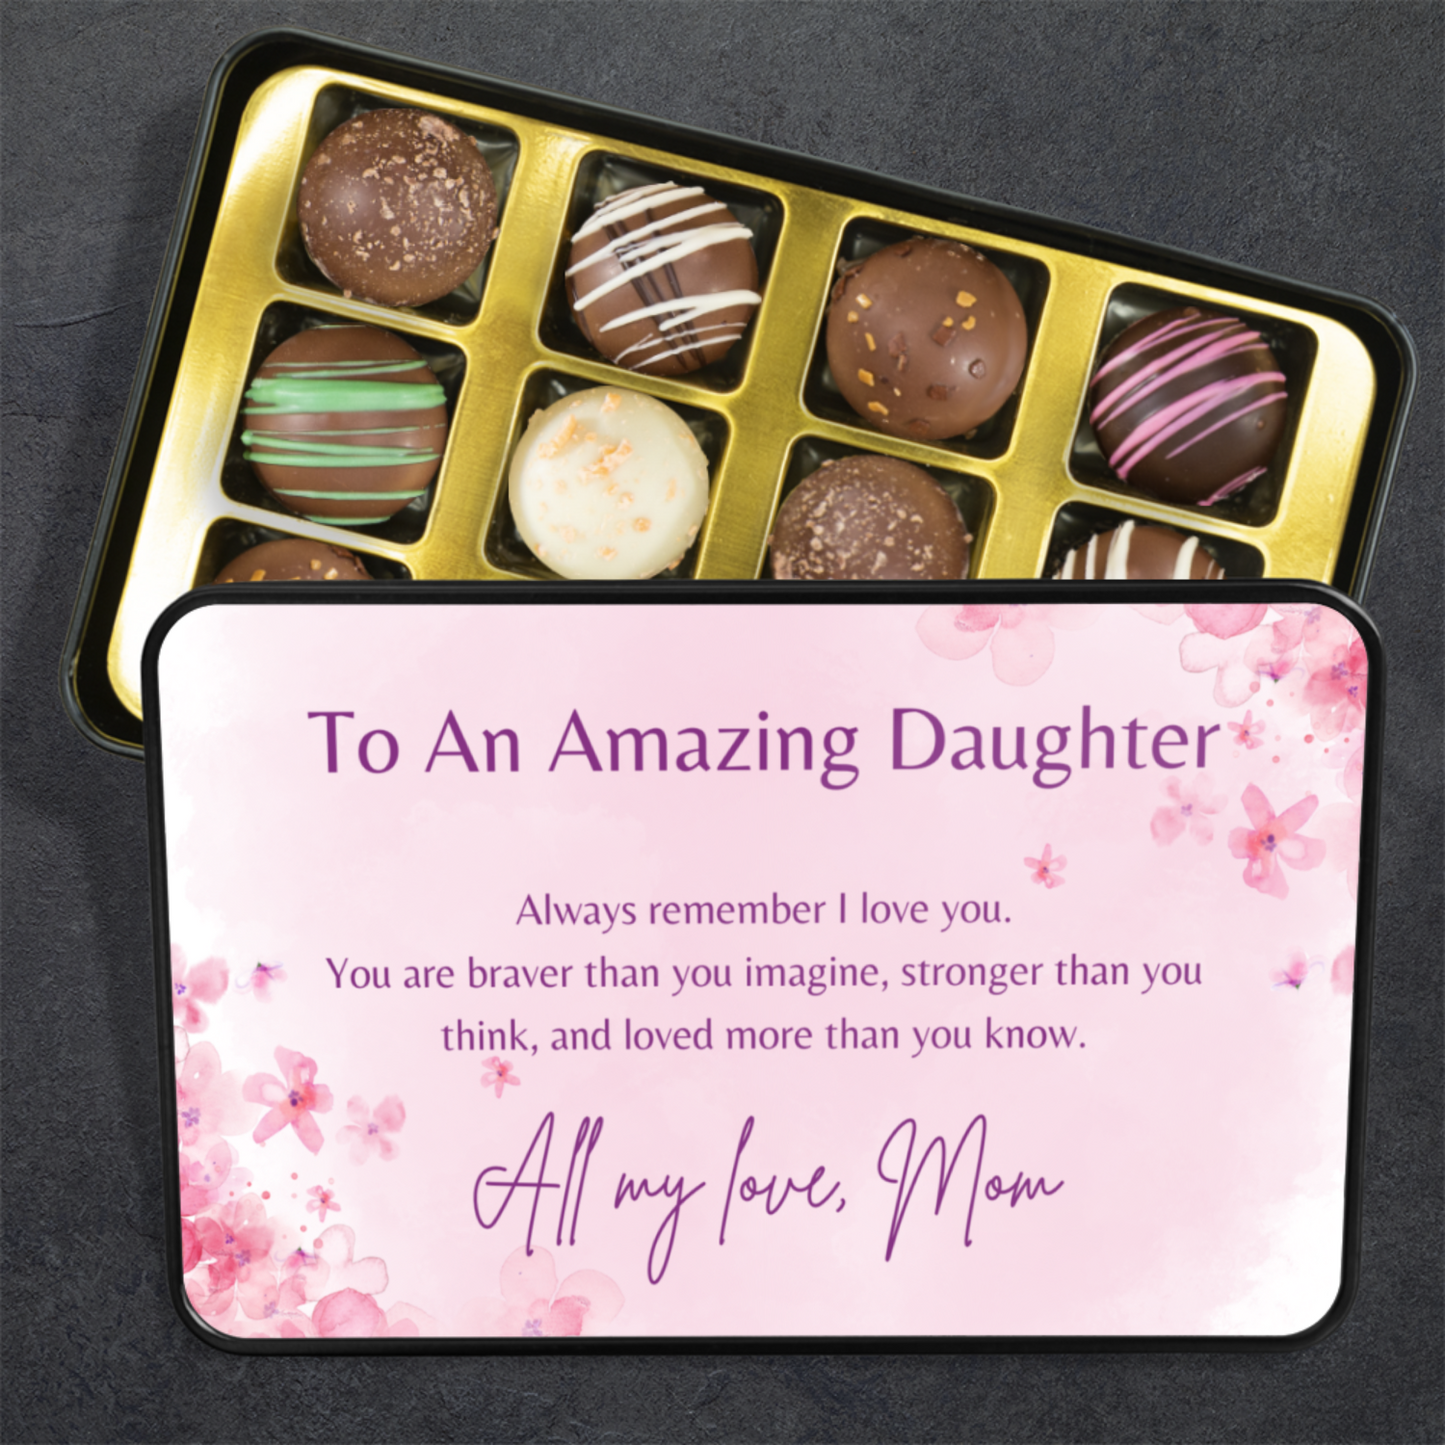 To My Amazing Daughter" Chocolate Truffles Gift Tin